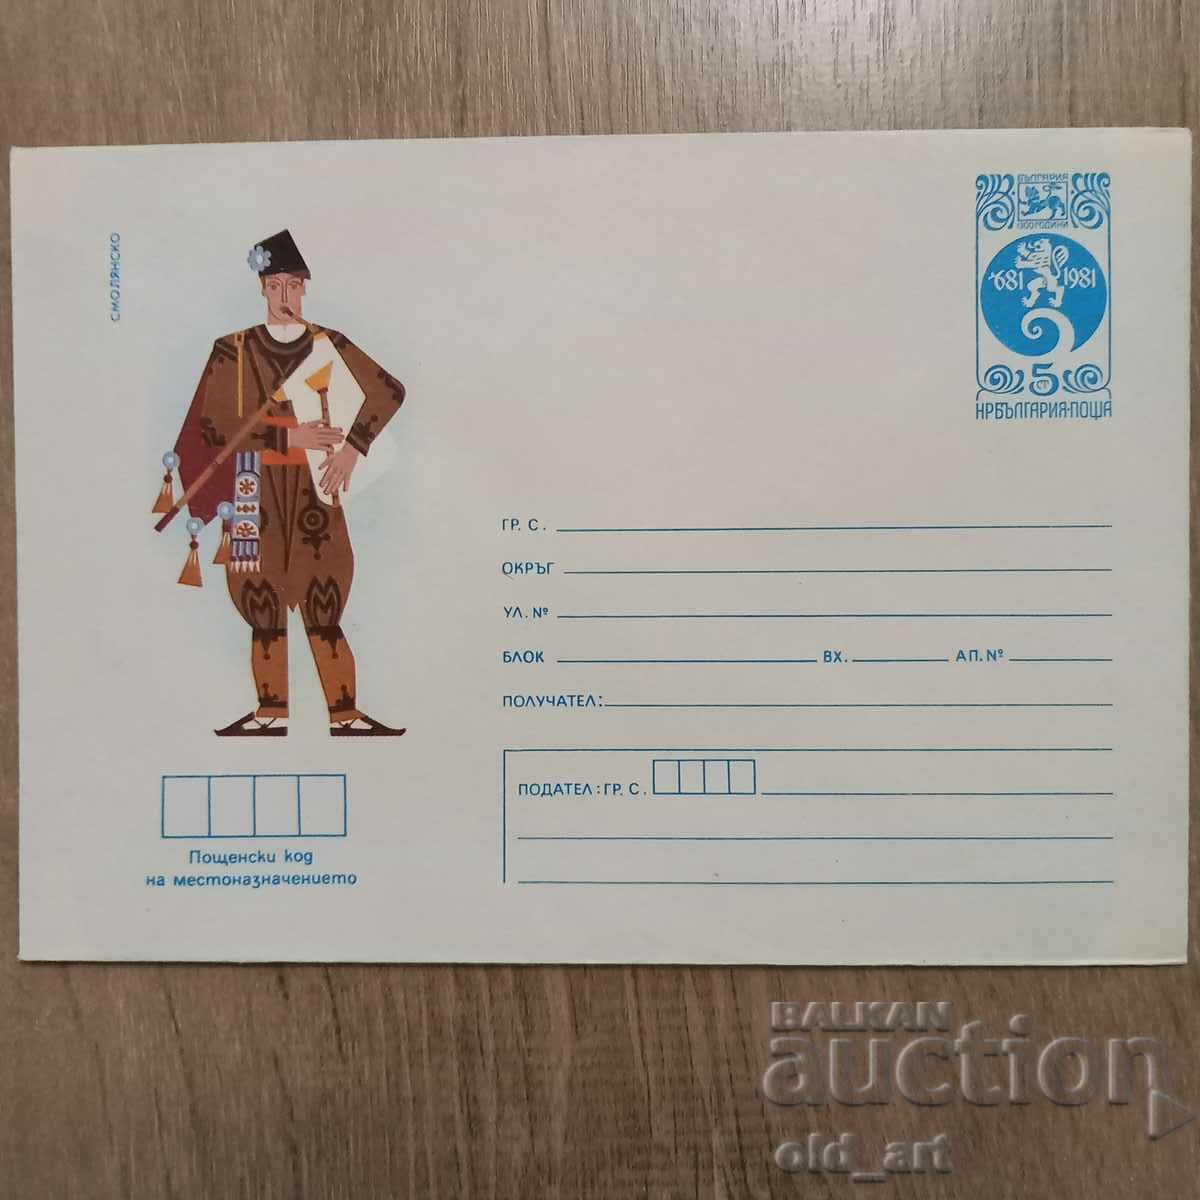 Ταχυδρομικός φάκελος - Λαϊκές φορεσιές - Smolyansko